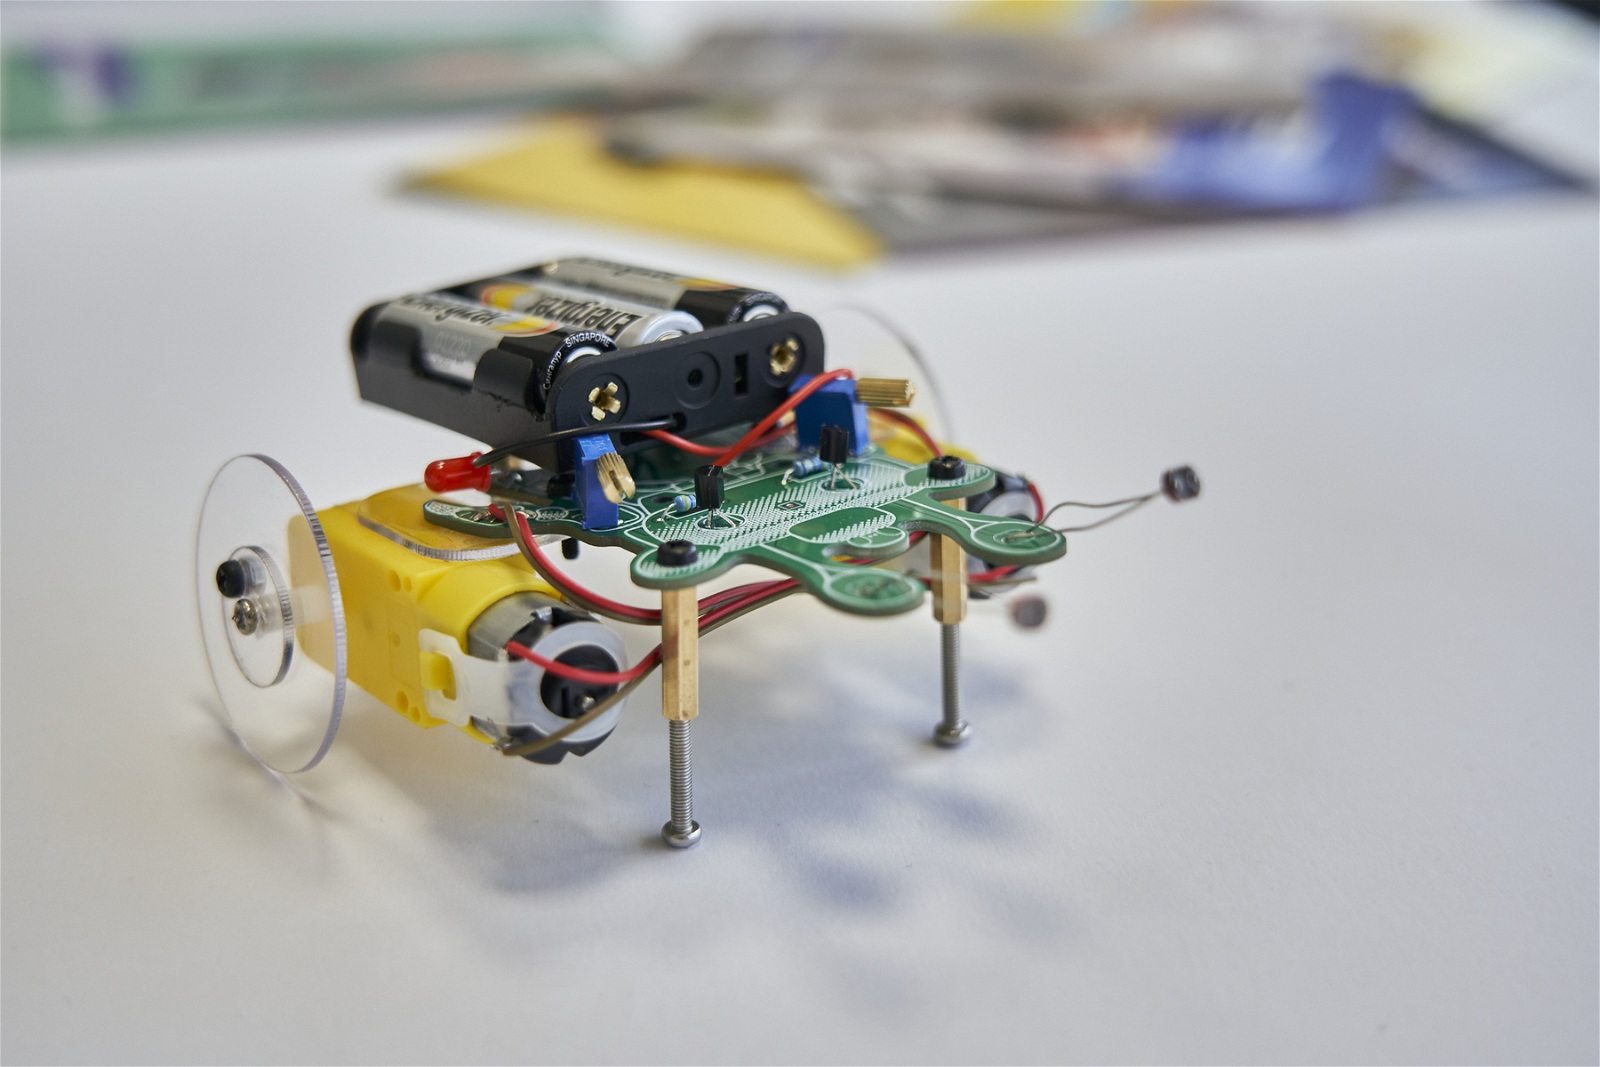 Zestaw edukacyjny CircuitMess DUSTY, the Wacky Robot - robot jeżdżący do samodzielnego montażu